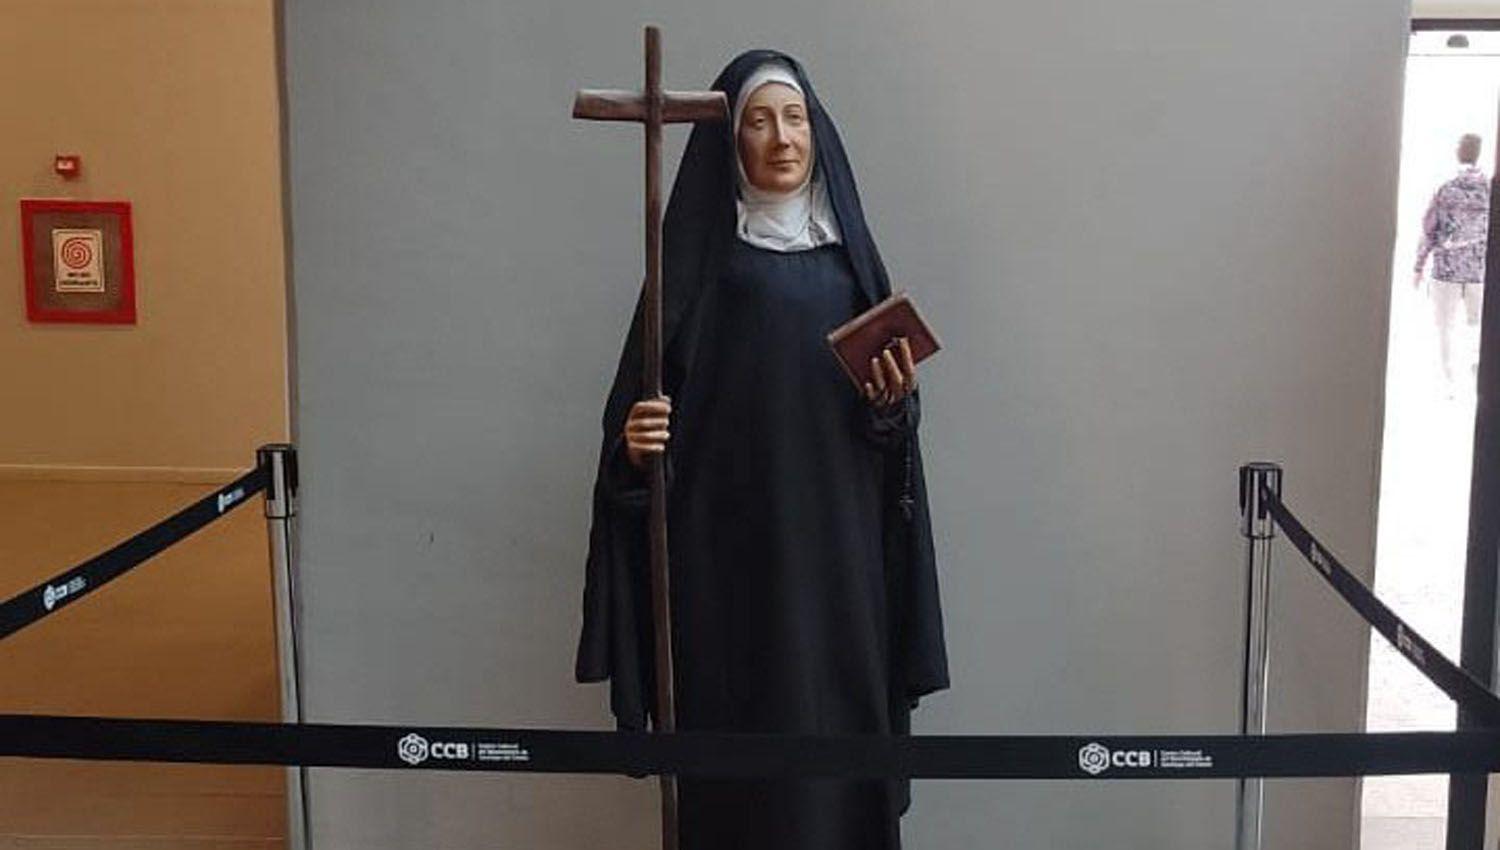 En el CCB instalan una escultura tamantildeo real de la Beata santiaguentildea